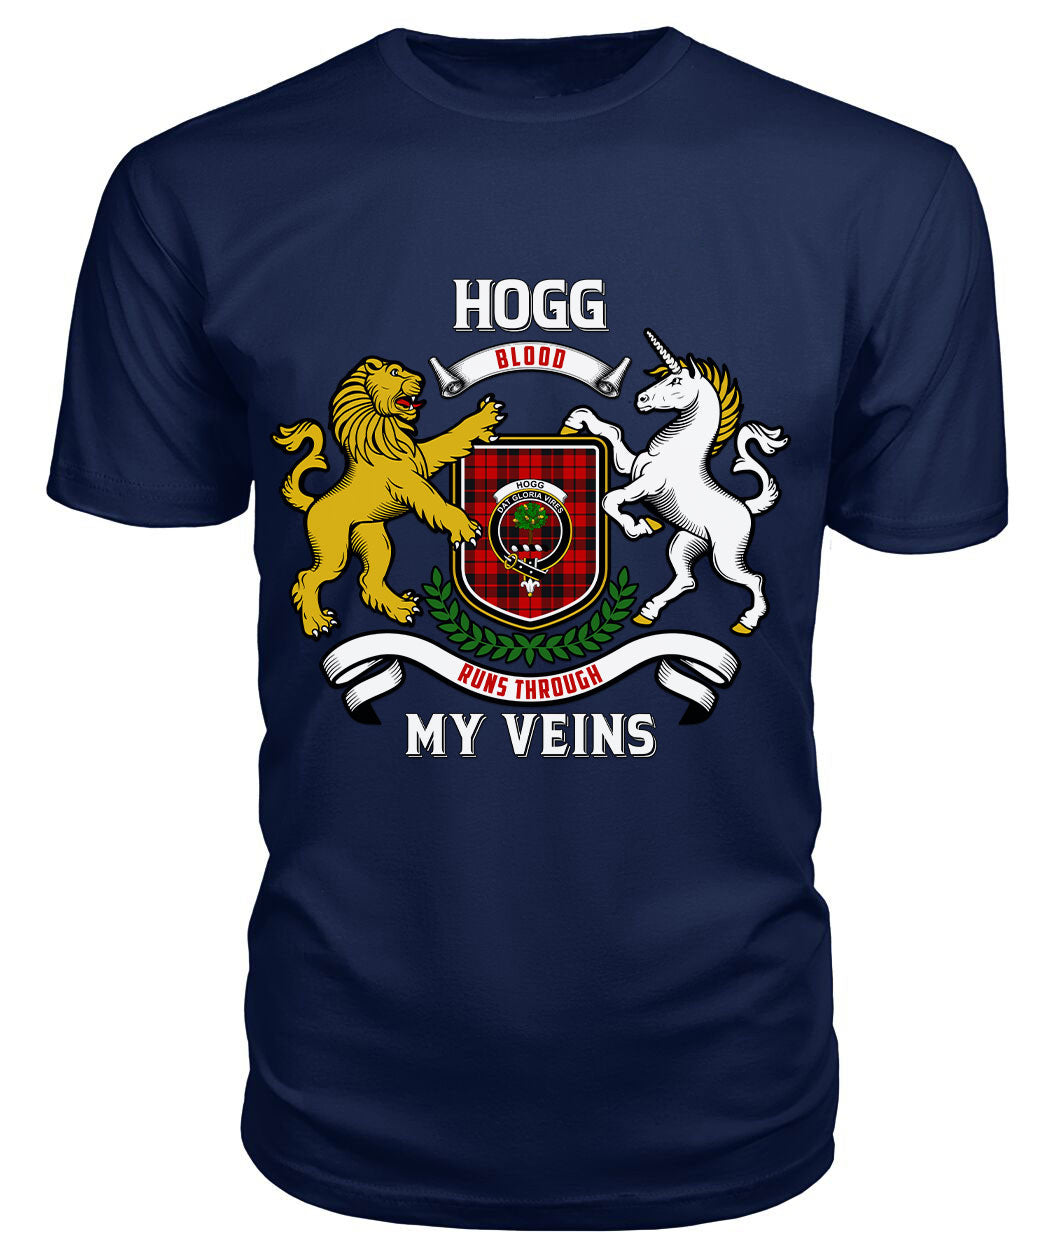 Hogg Tartan Crest 2D T-shirt - Blood Runs Through My Veins Style